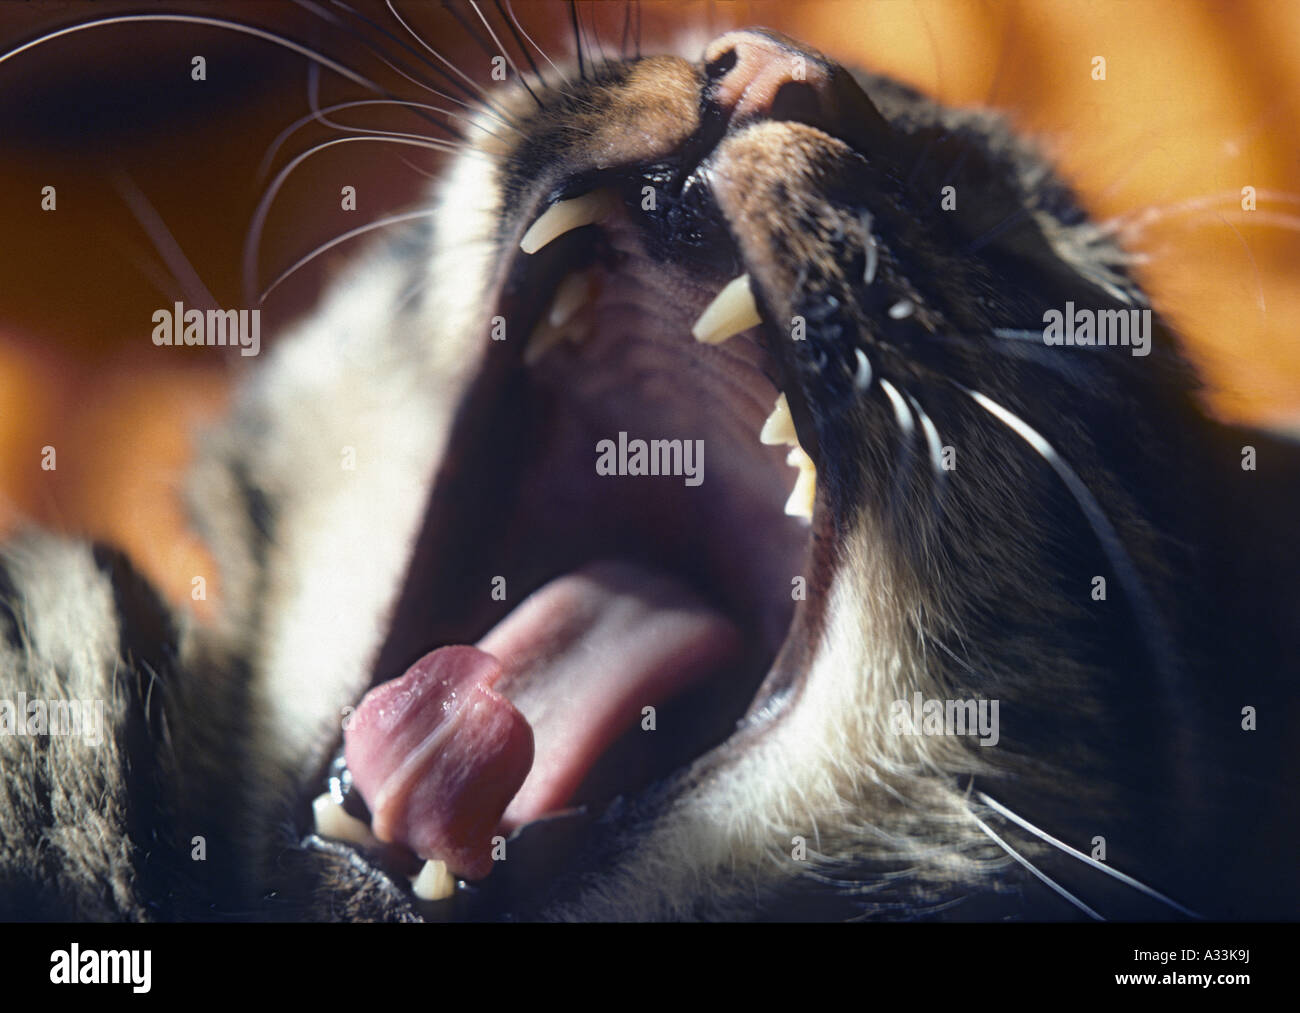 cat yawning Stock Photo